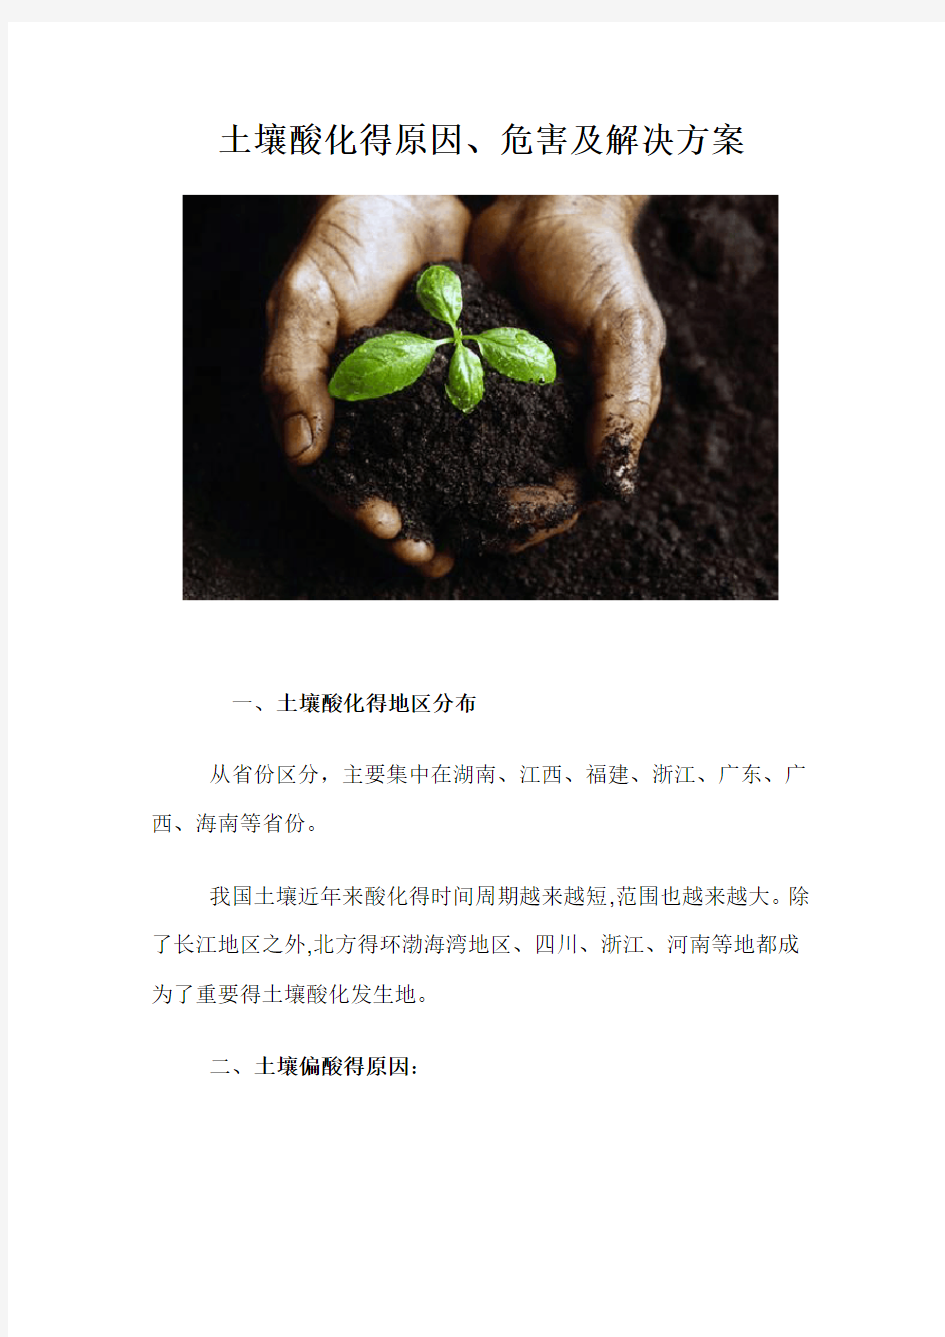 土壤酸化的原因、危害及解决方案